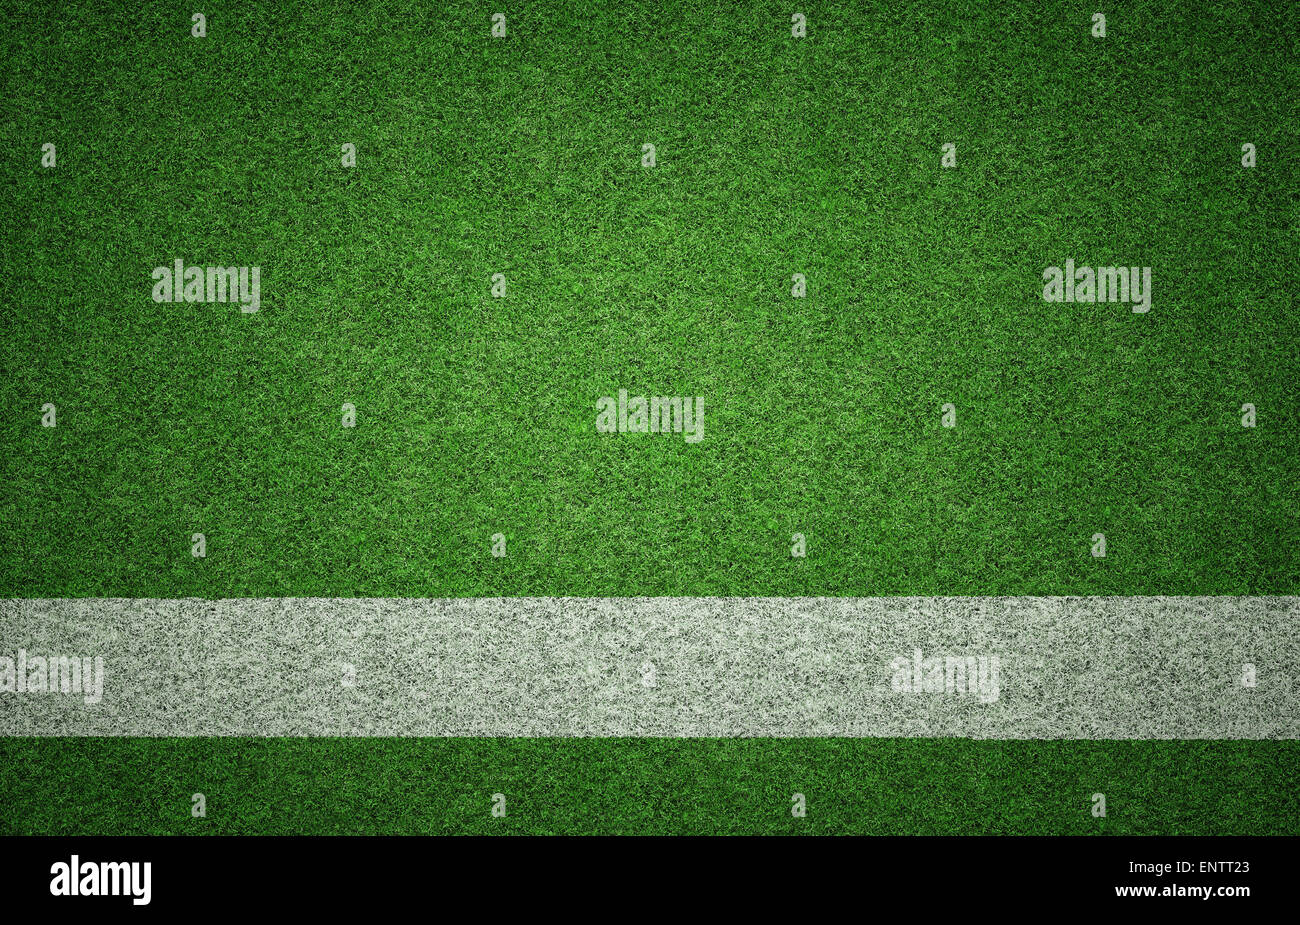 Weiß lackierter Linie auf grünen Rasen Hintergrundtextur Grunge Beleuchtung mit vielen Textfreiraum. Perfekt für Sport-Designs. Stockfoto